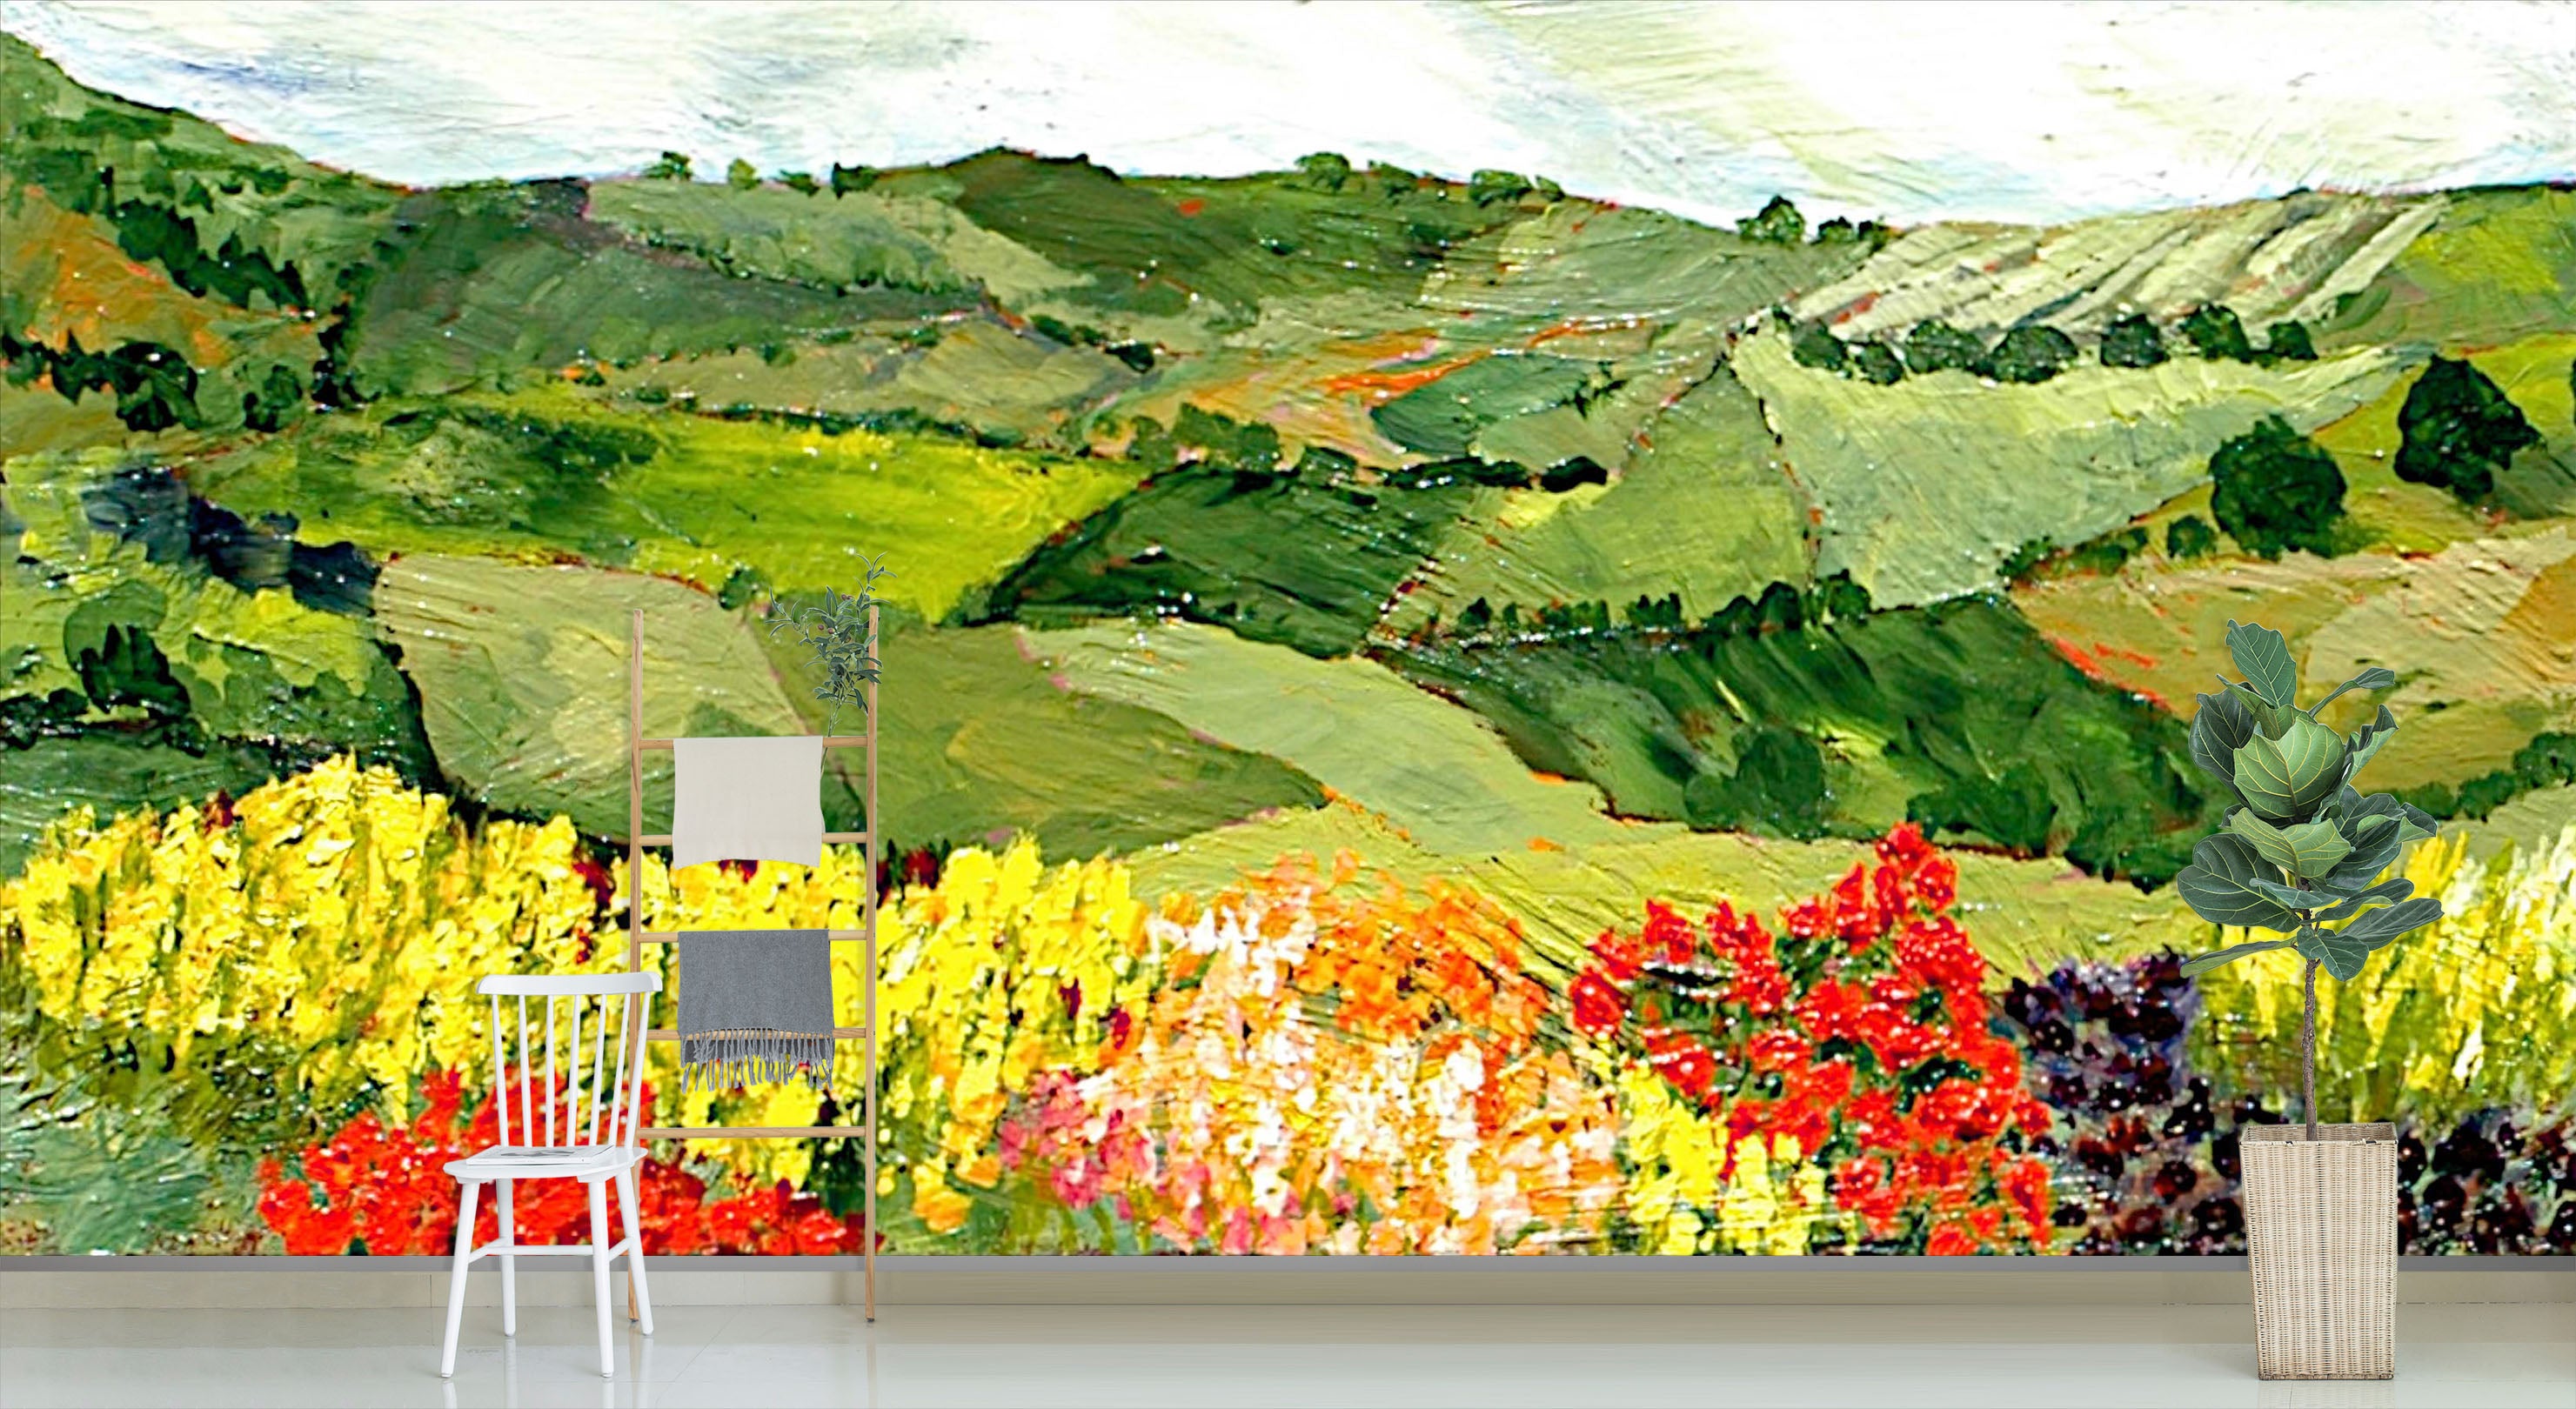 3D Colorful Garden 127 Allan P. Friedlander Wall Mural Wall Murals